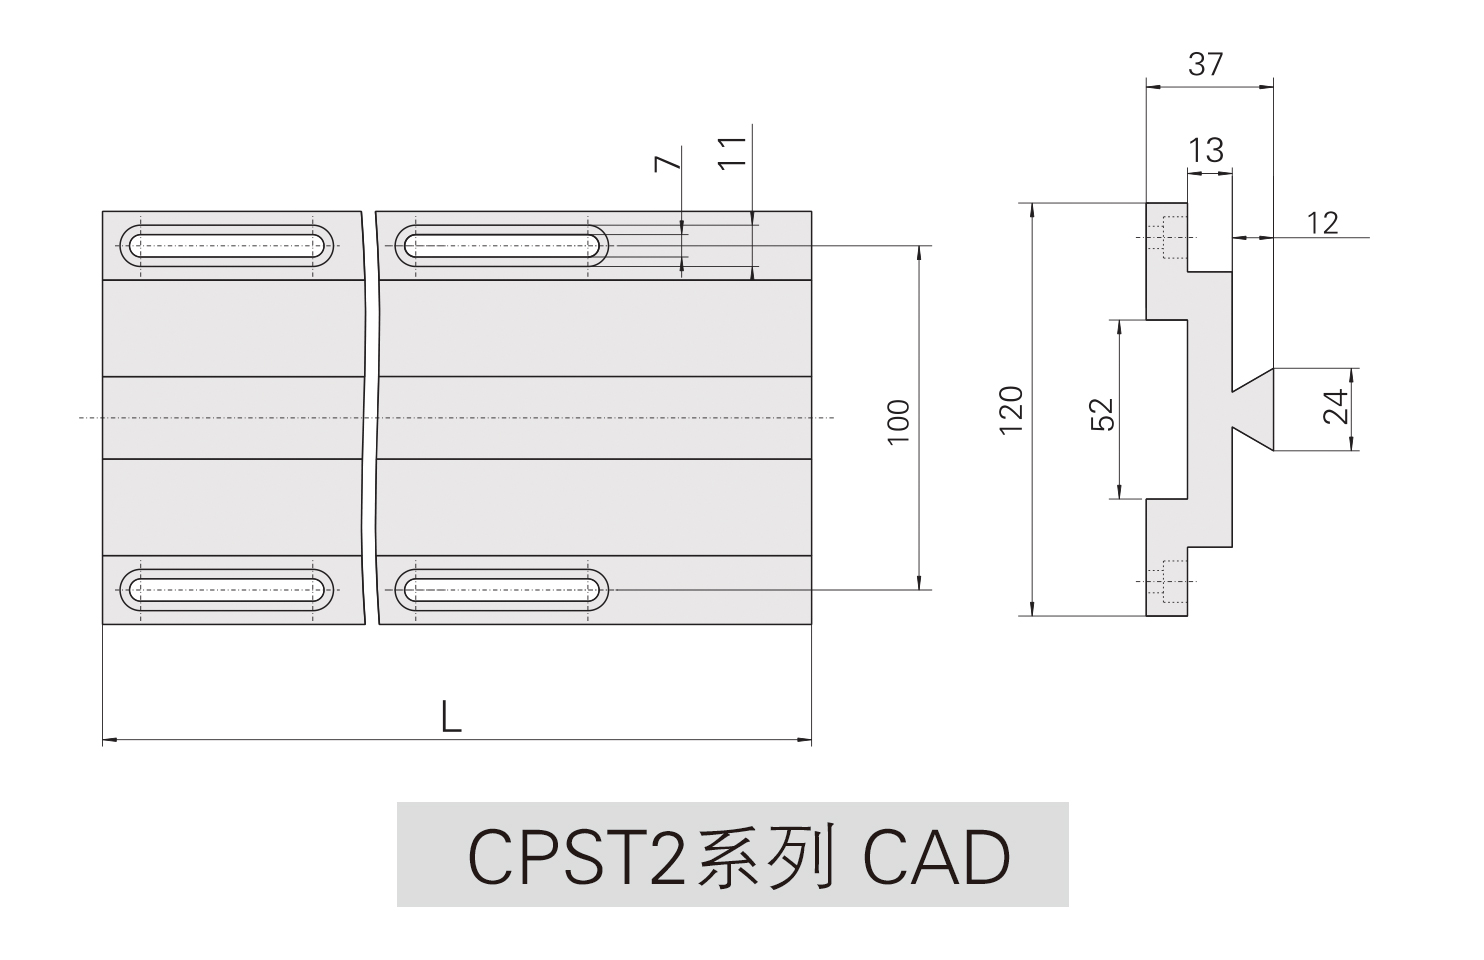 CPST2系列光学滑轨CAD